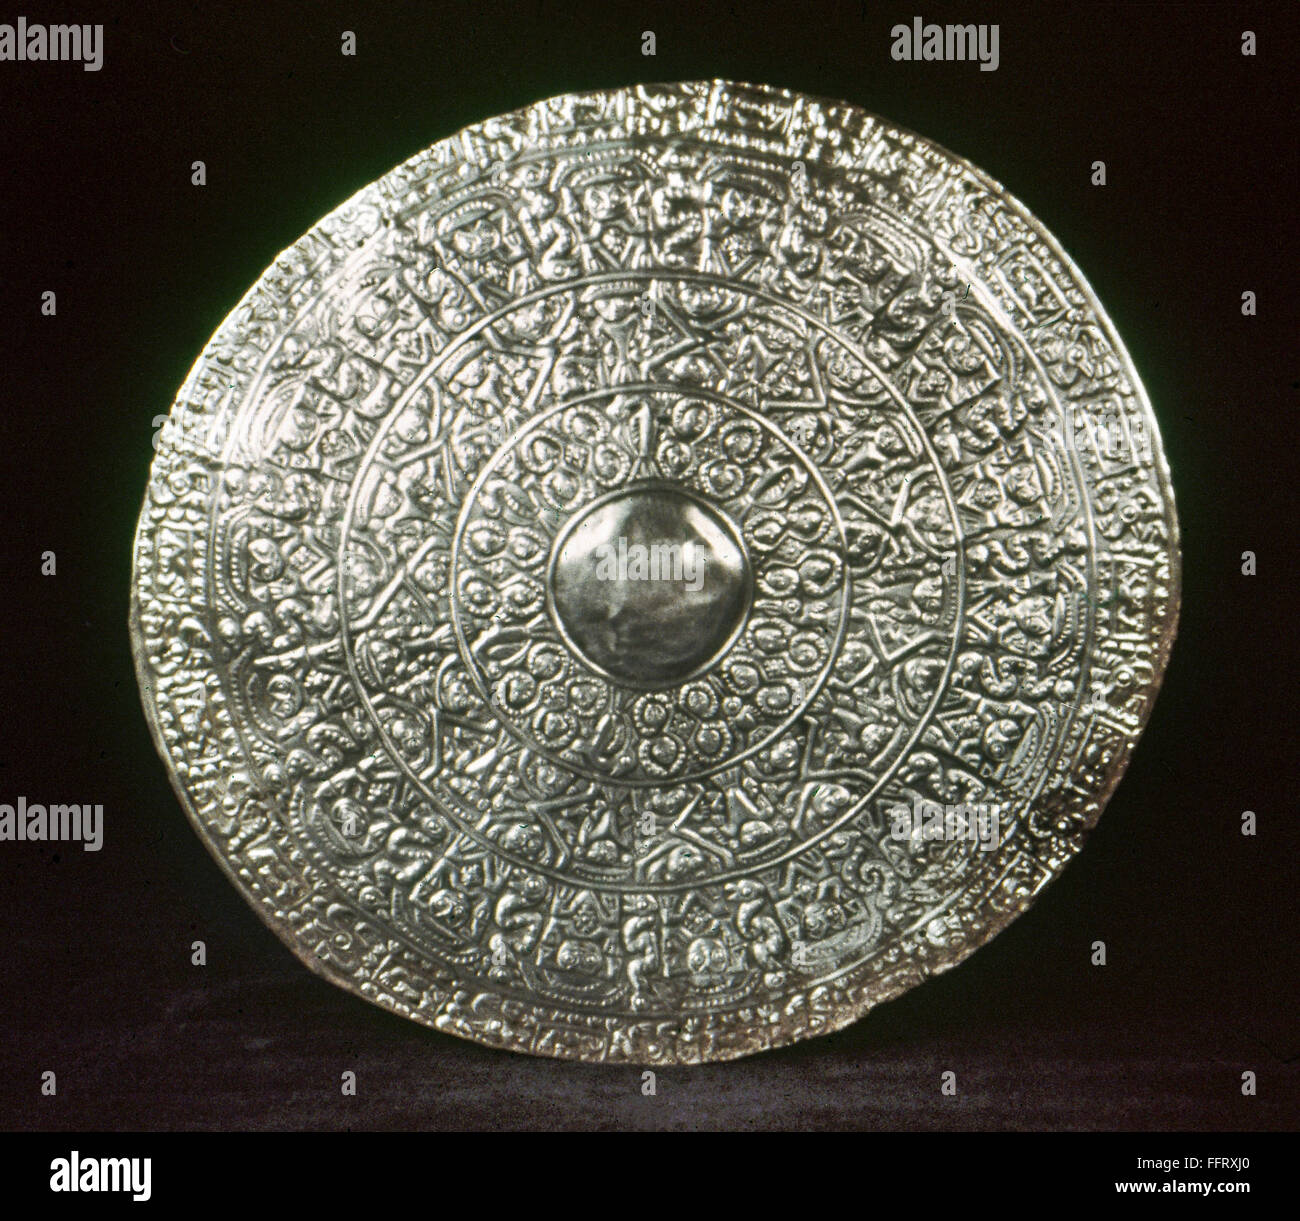 Perú: CHIMU disco de plata. /NLarge disco de plata repujado realizados por la cultura Chimú del antiguo Perú, el 13 y el siglo 16. Foto de stock